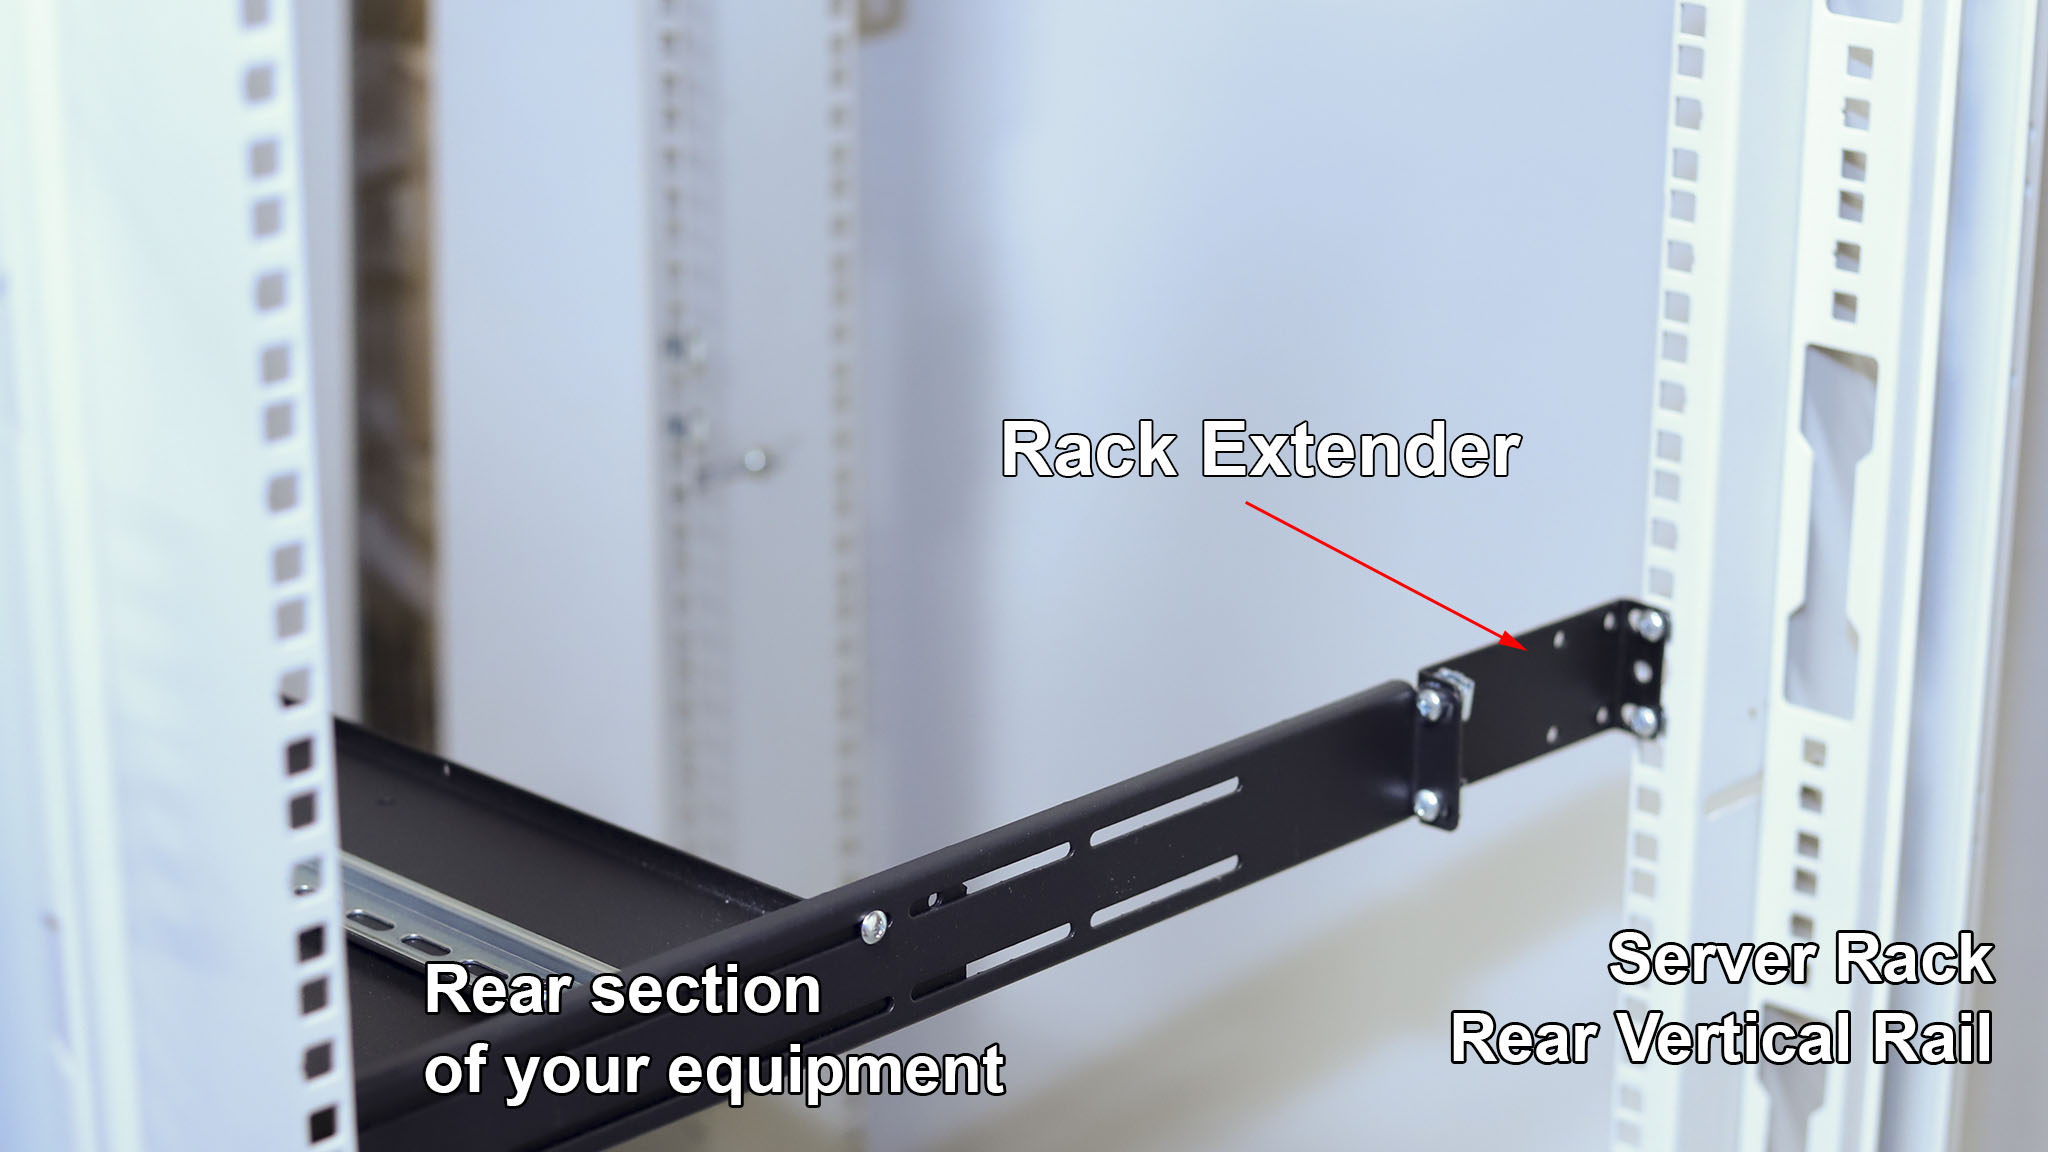 What is IAB106V10-1U rack extender